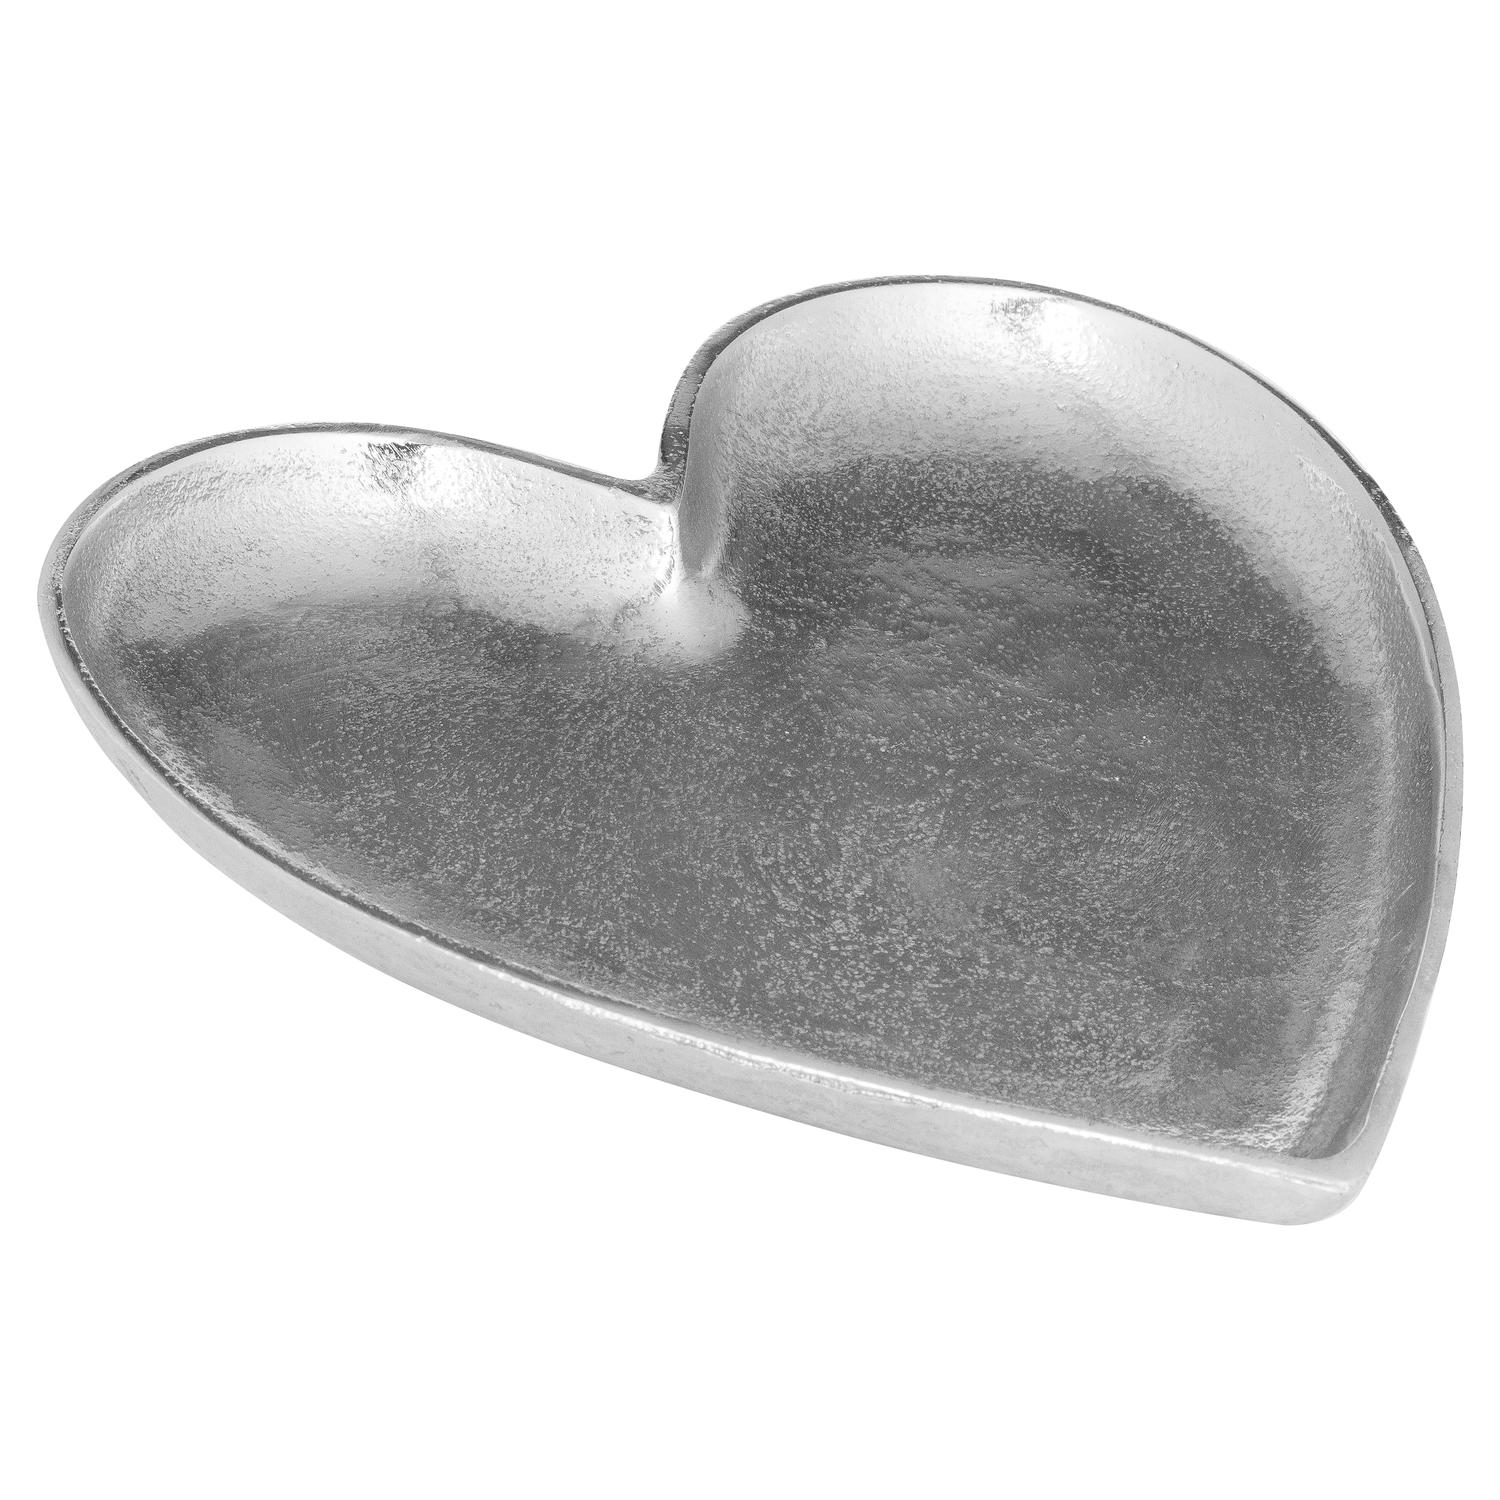 Cast Aluminium Large Heart Dish - Image 1